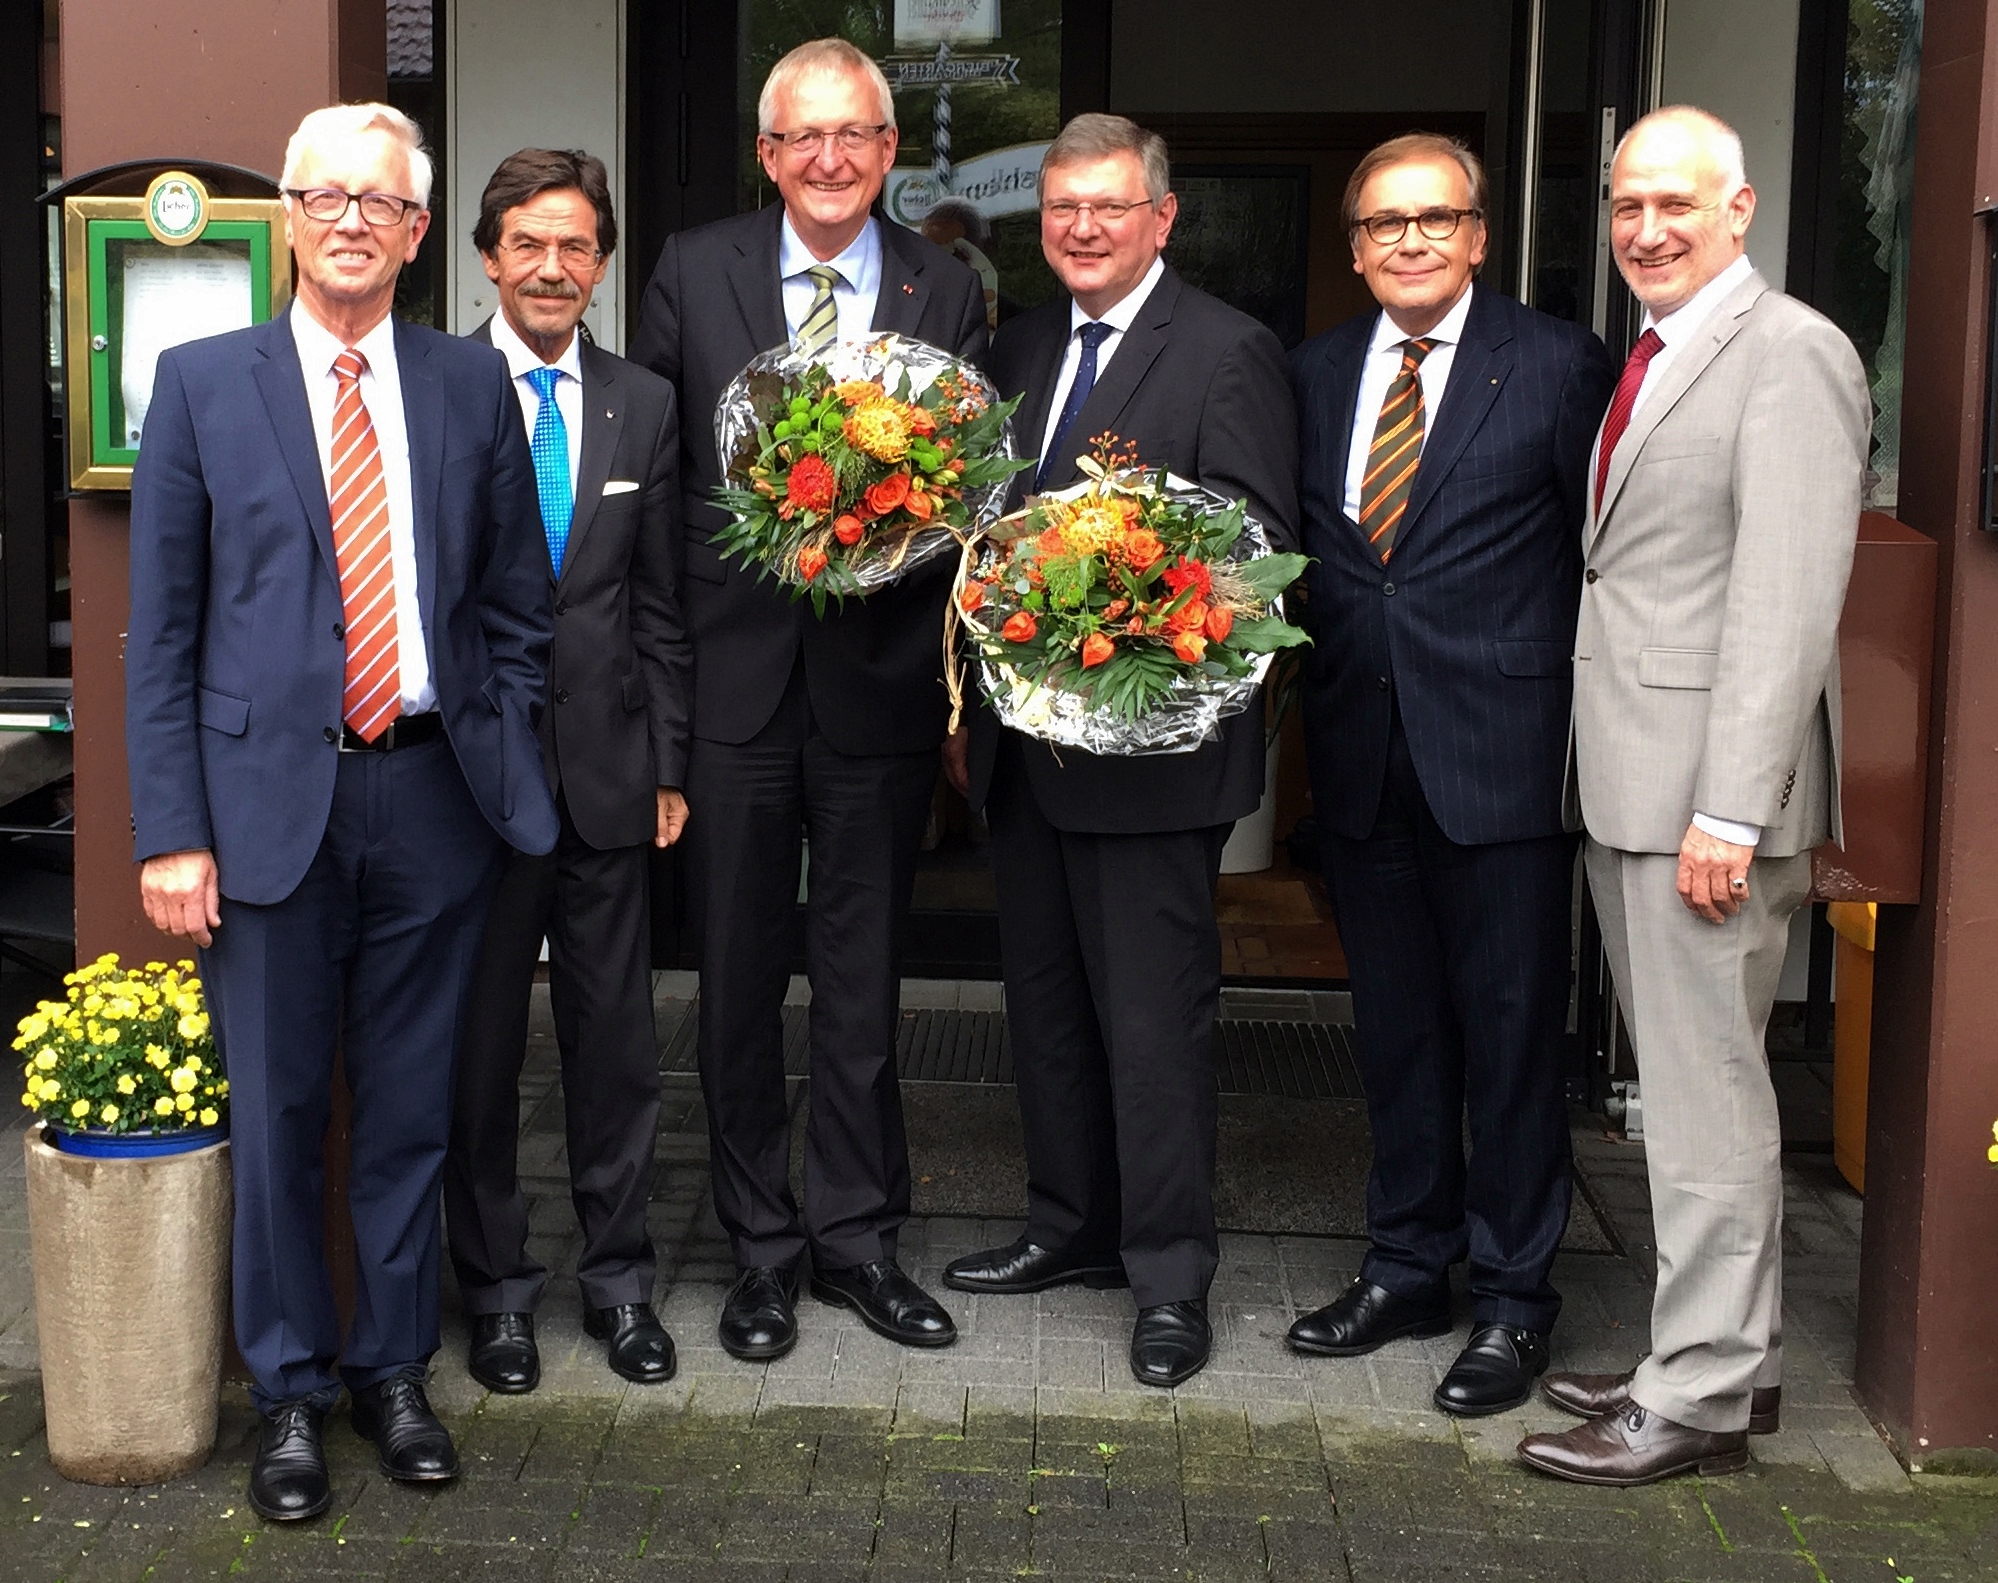 Ulrich Künz, Karl-Heinz Schäfer, Diedrich Backhaus, Klaus Temmen, Karl-Christian Schelzke, Harald Semler